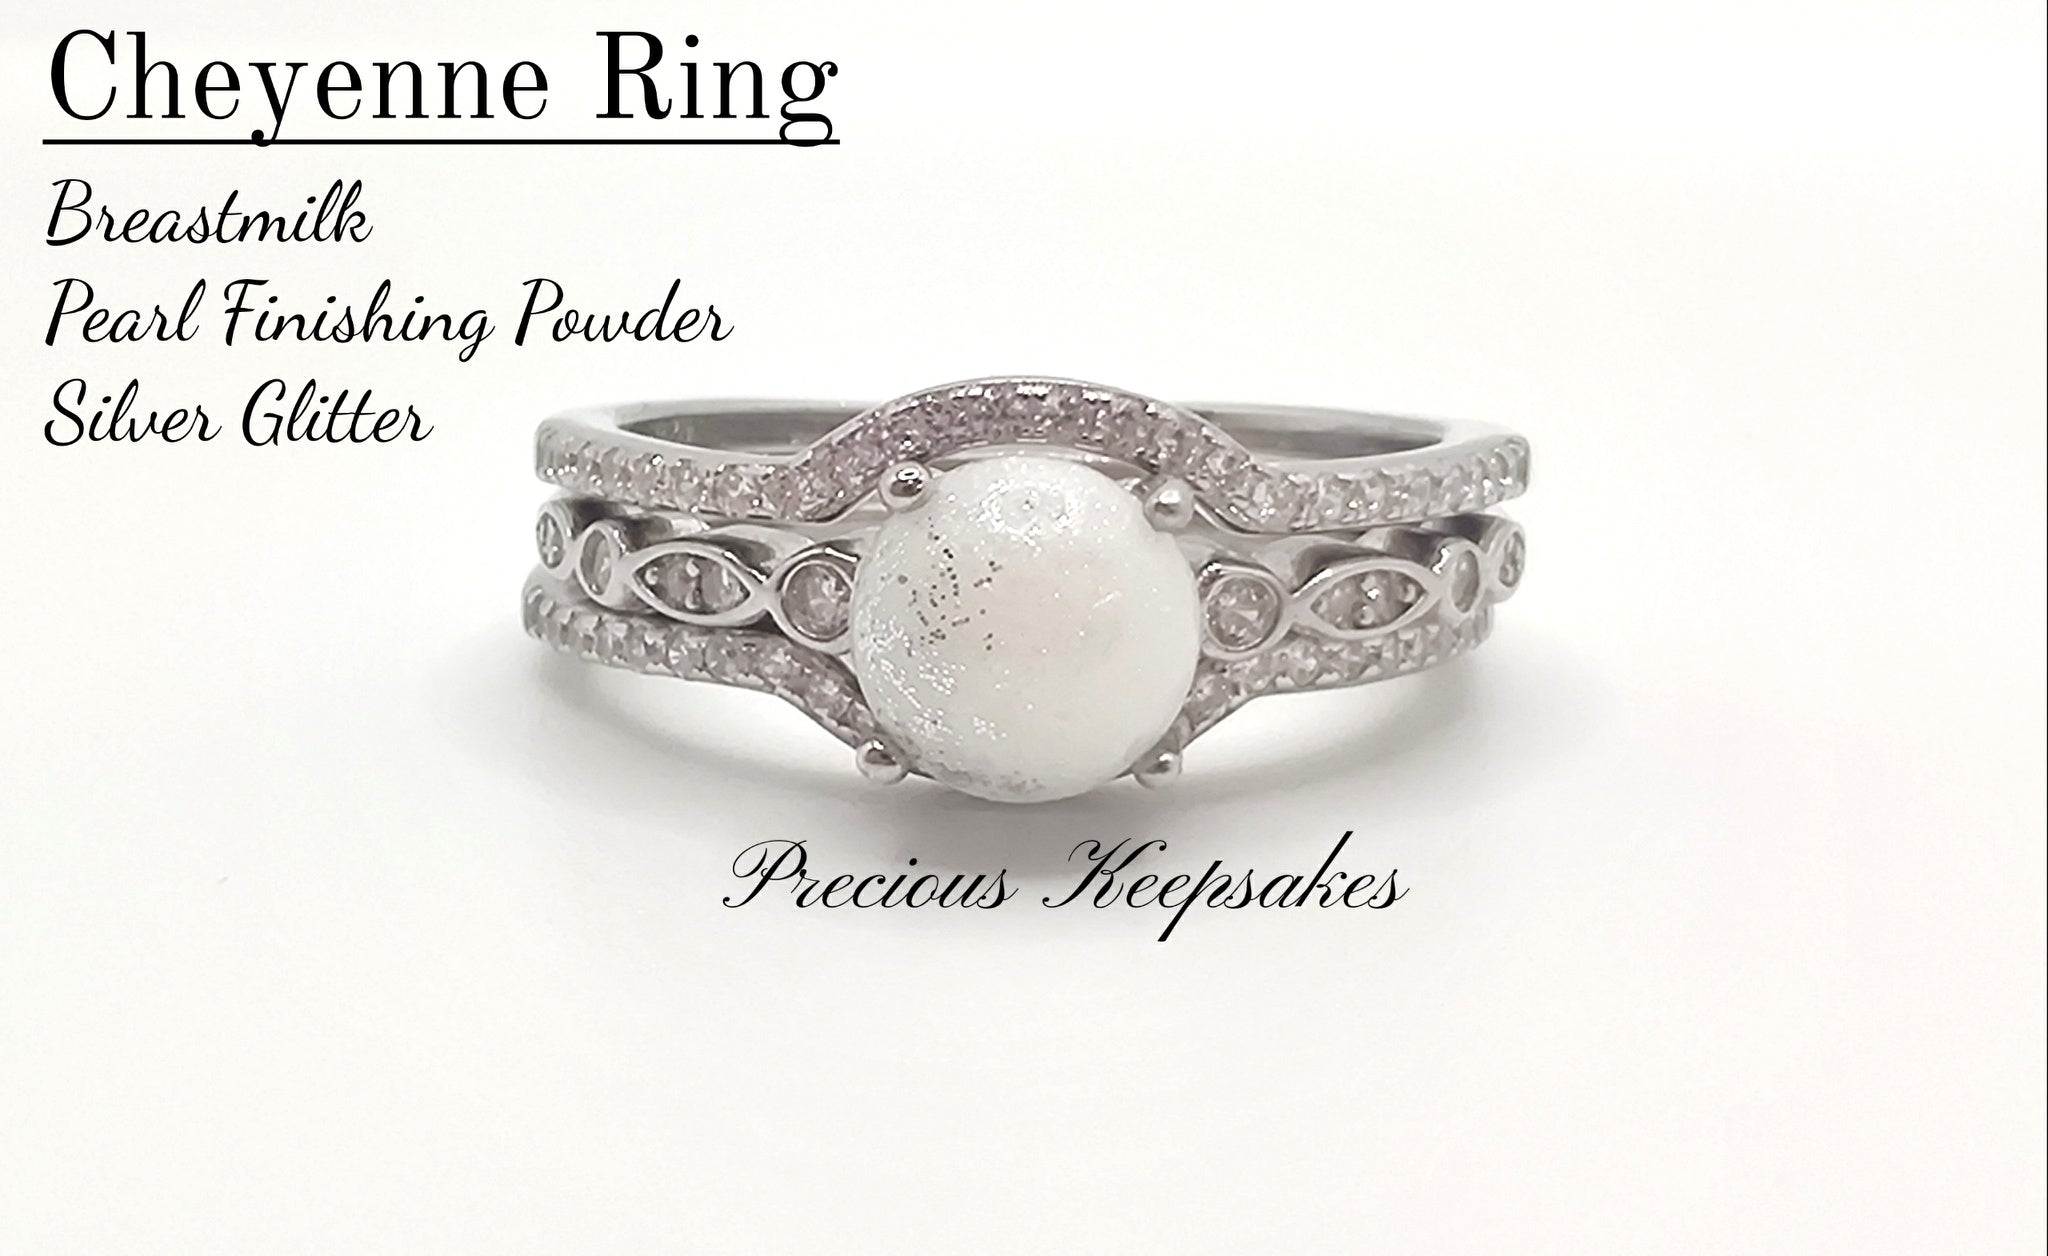 Cheyenne Ring